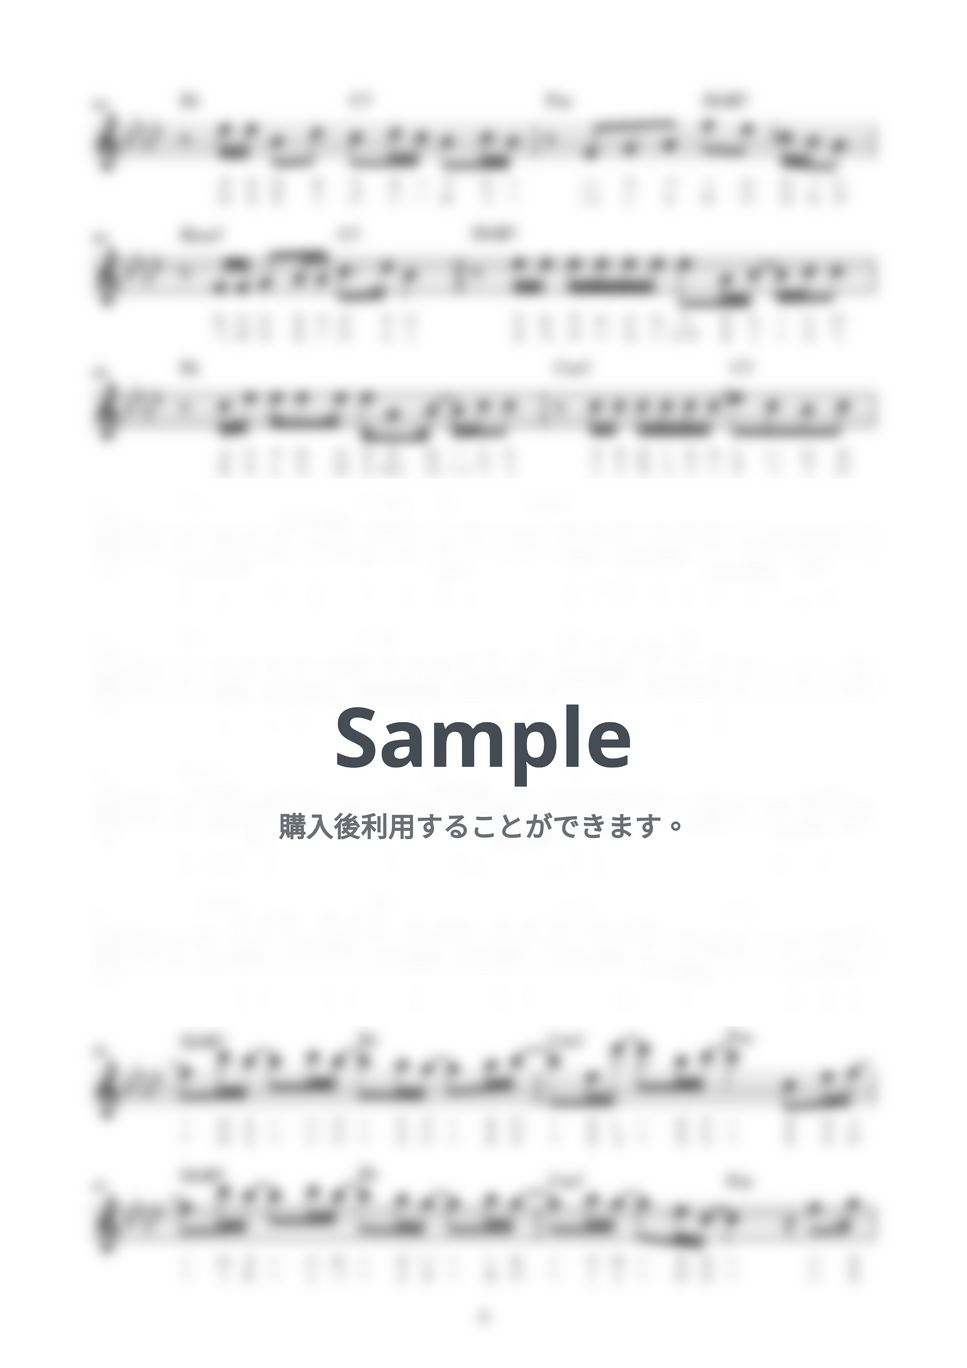 いきものがかり - SAKURA (歌詞コード付メロディ譜) by i blocks